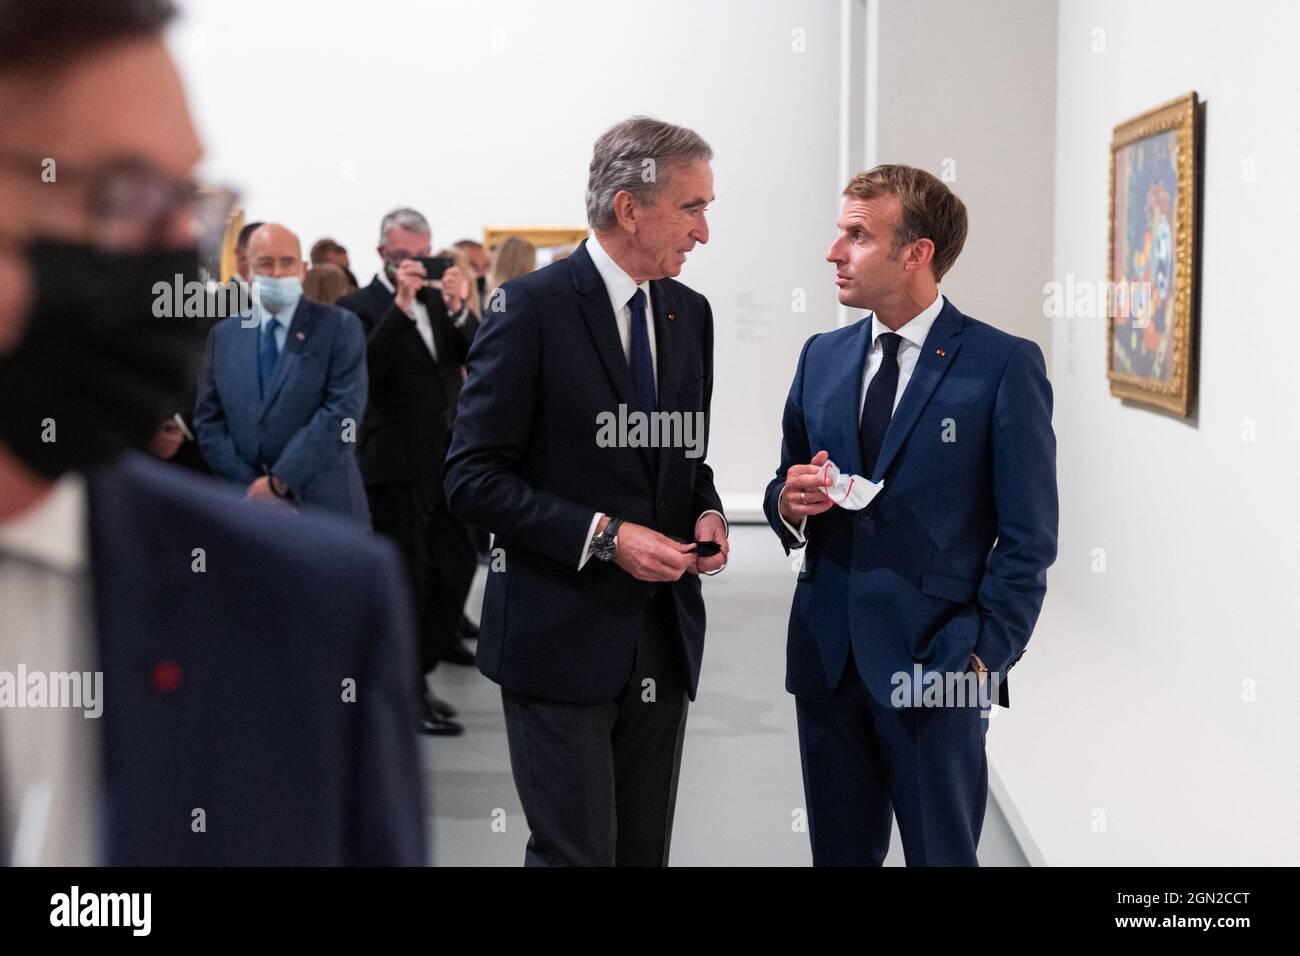 Macron s'affiche avec Bernard Arnault et Patrick-Louis Vuitton